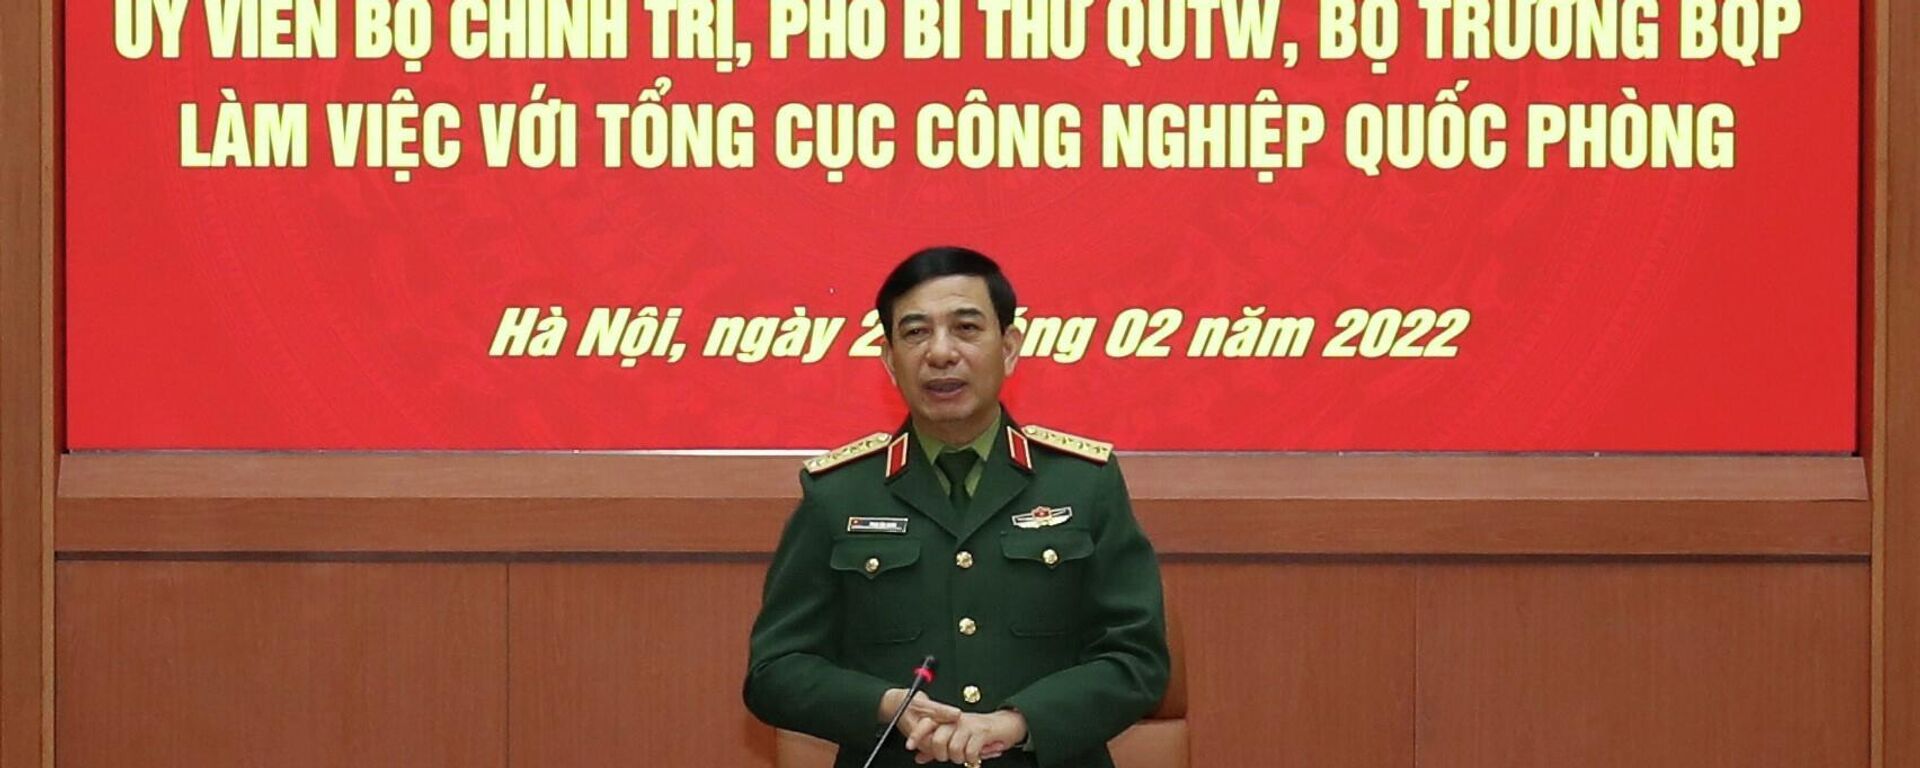 Đại tướng Phan Văn Giang phát biểu tại buổi làm việc - Sputnik Việt Nam, 1920, 06.03.2022